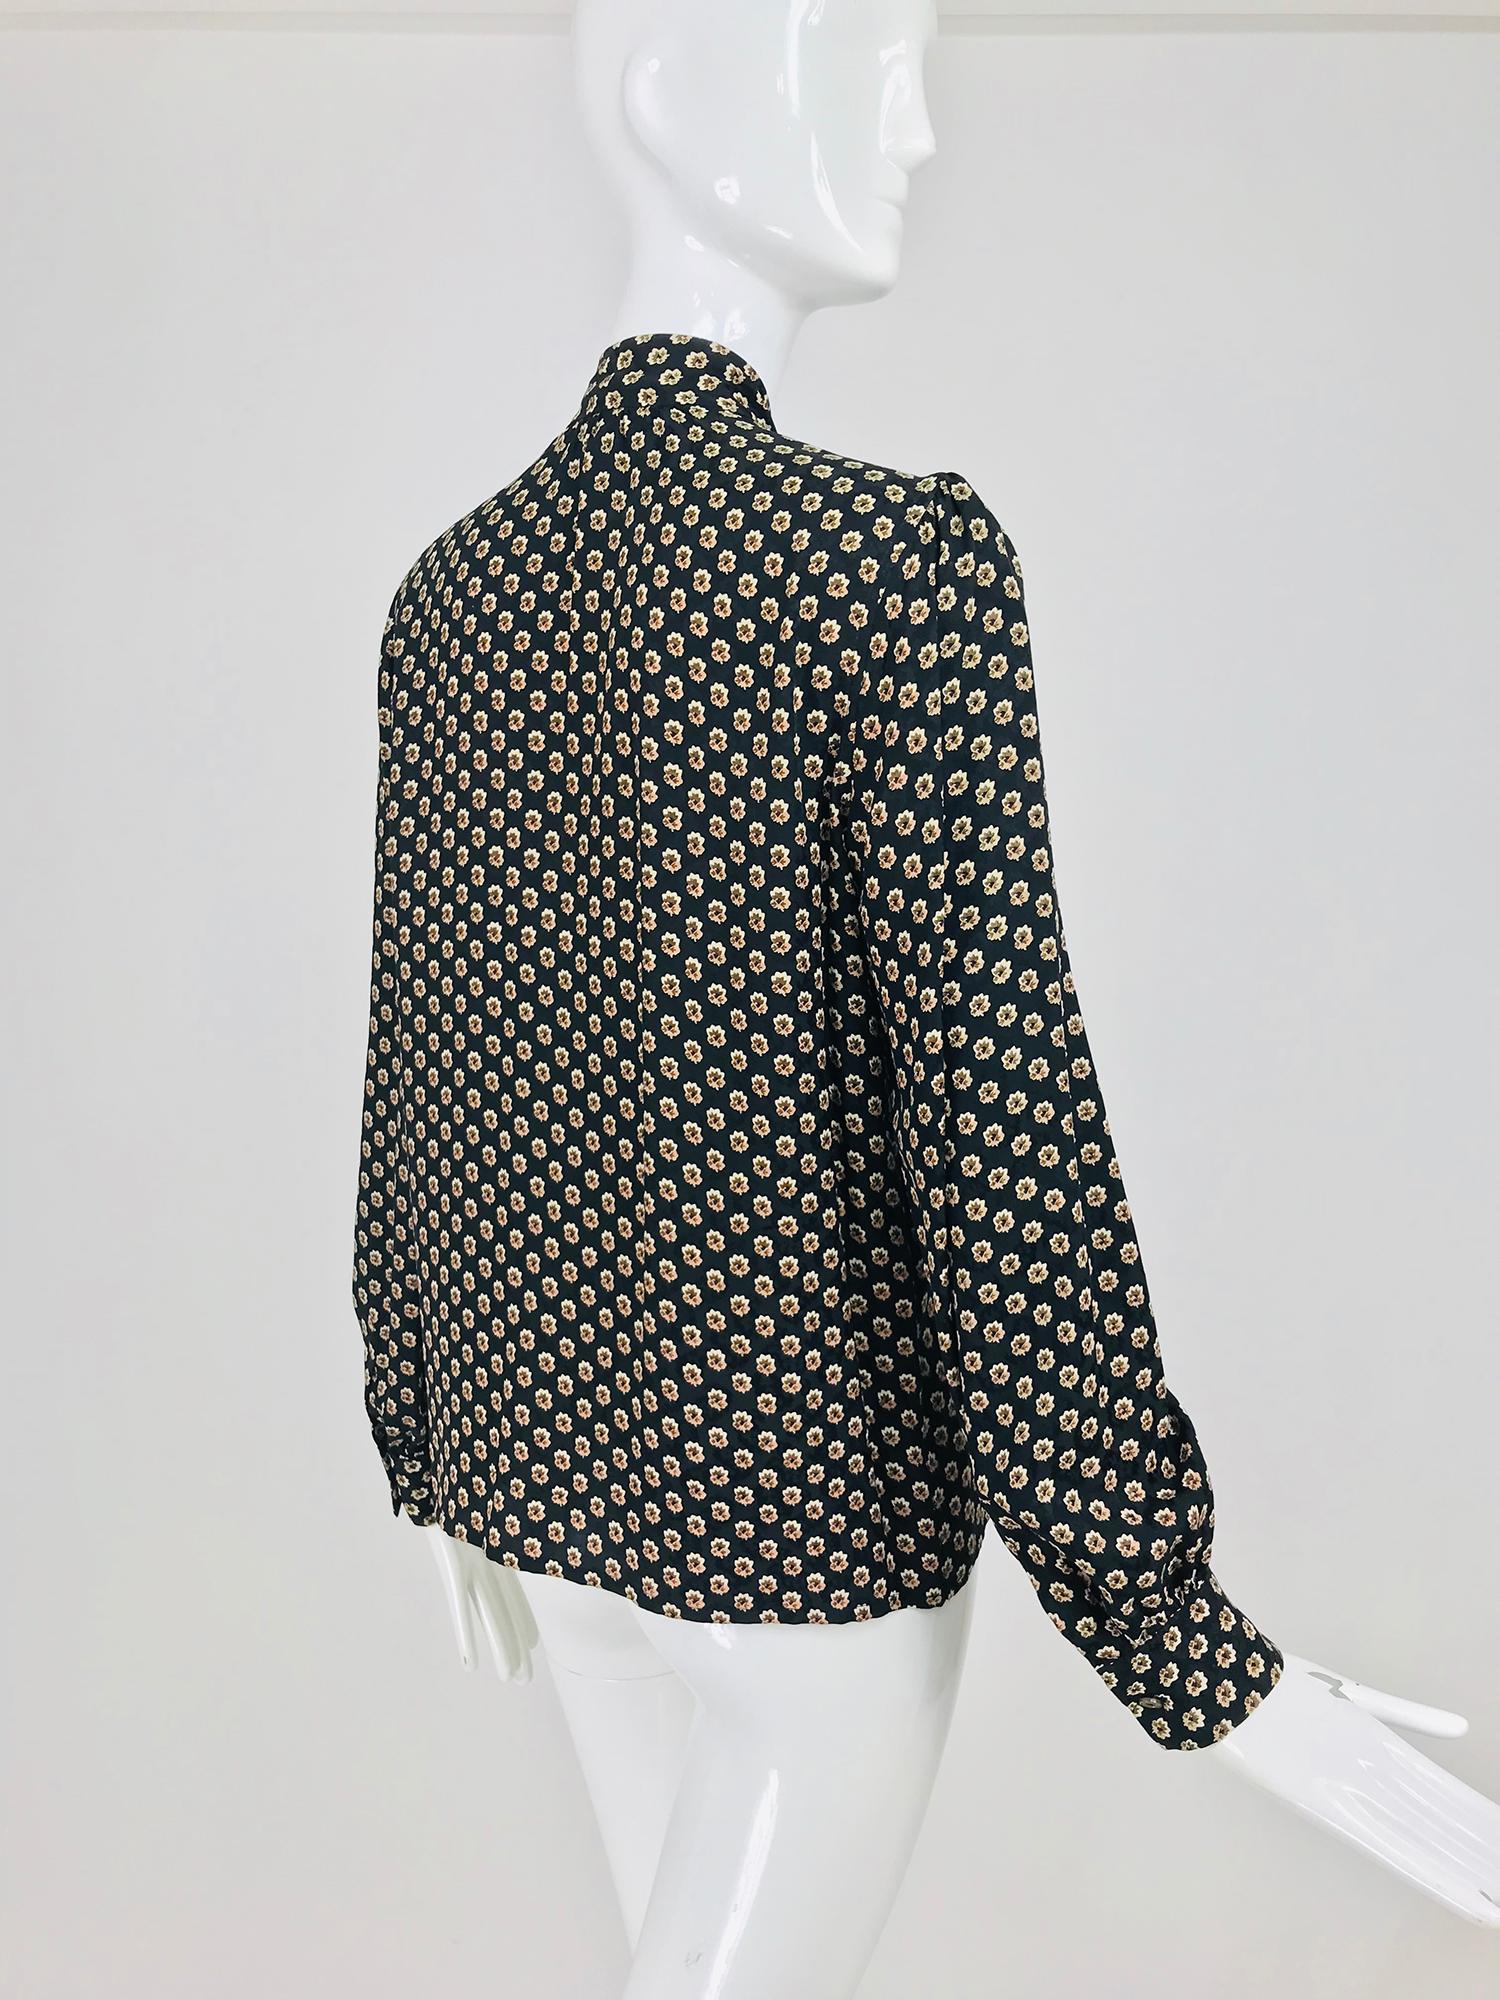 Yves Saint Laurent Provincial Print Silk Bow Neck Blouse 1970s 4